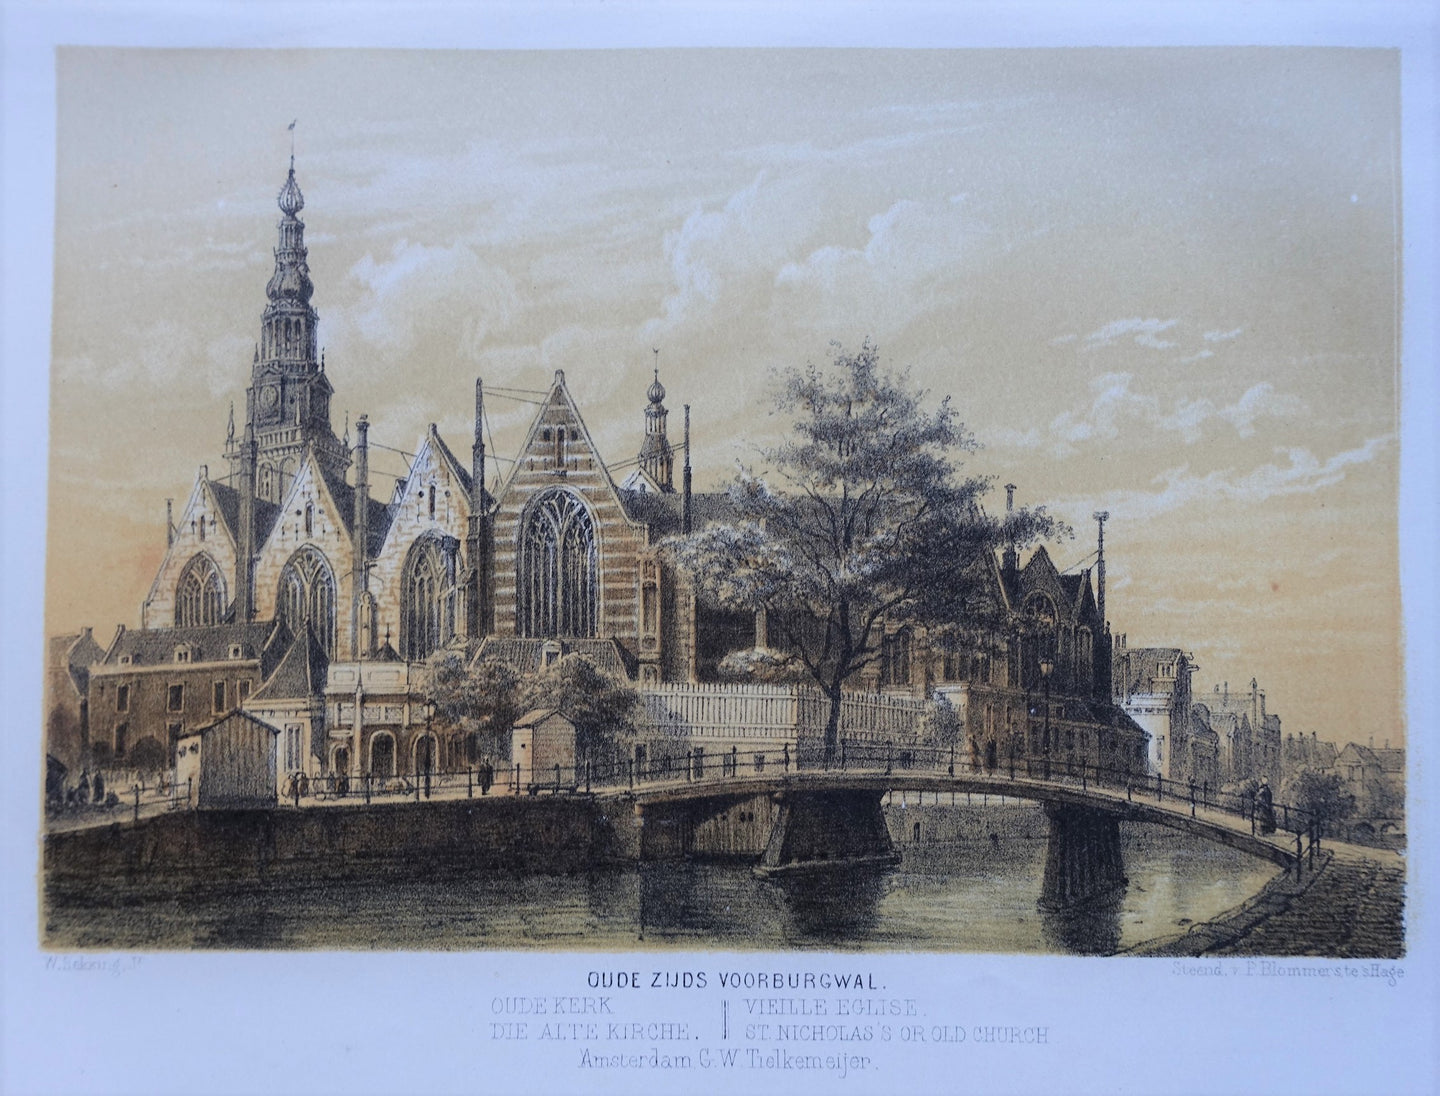 Amsterdam Oude Kerk - W Hekking jr/ GW Tielkemeijer - 1861